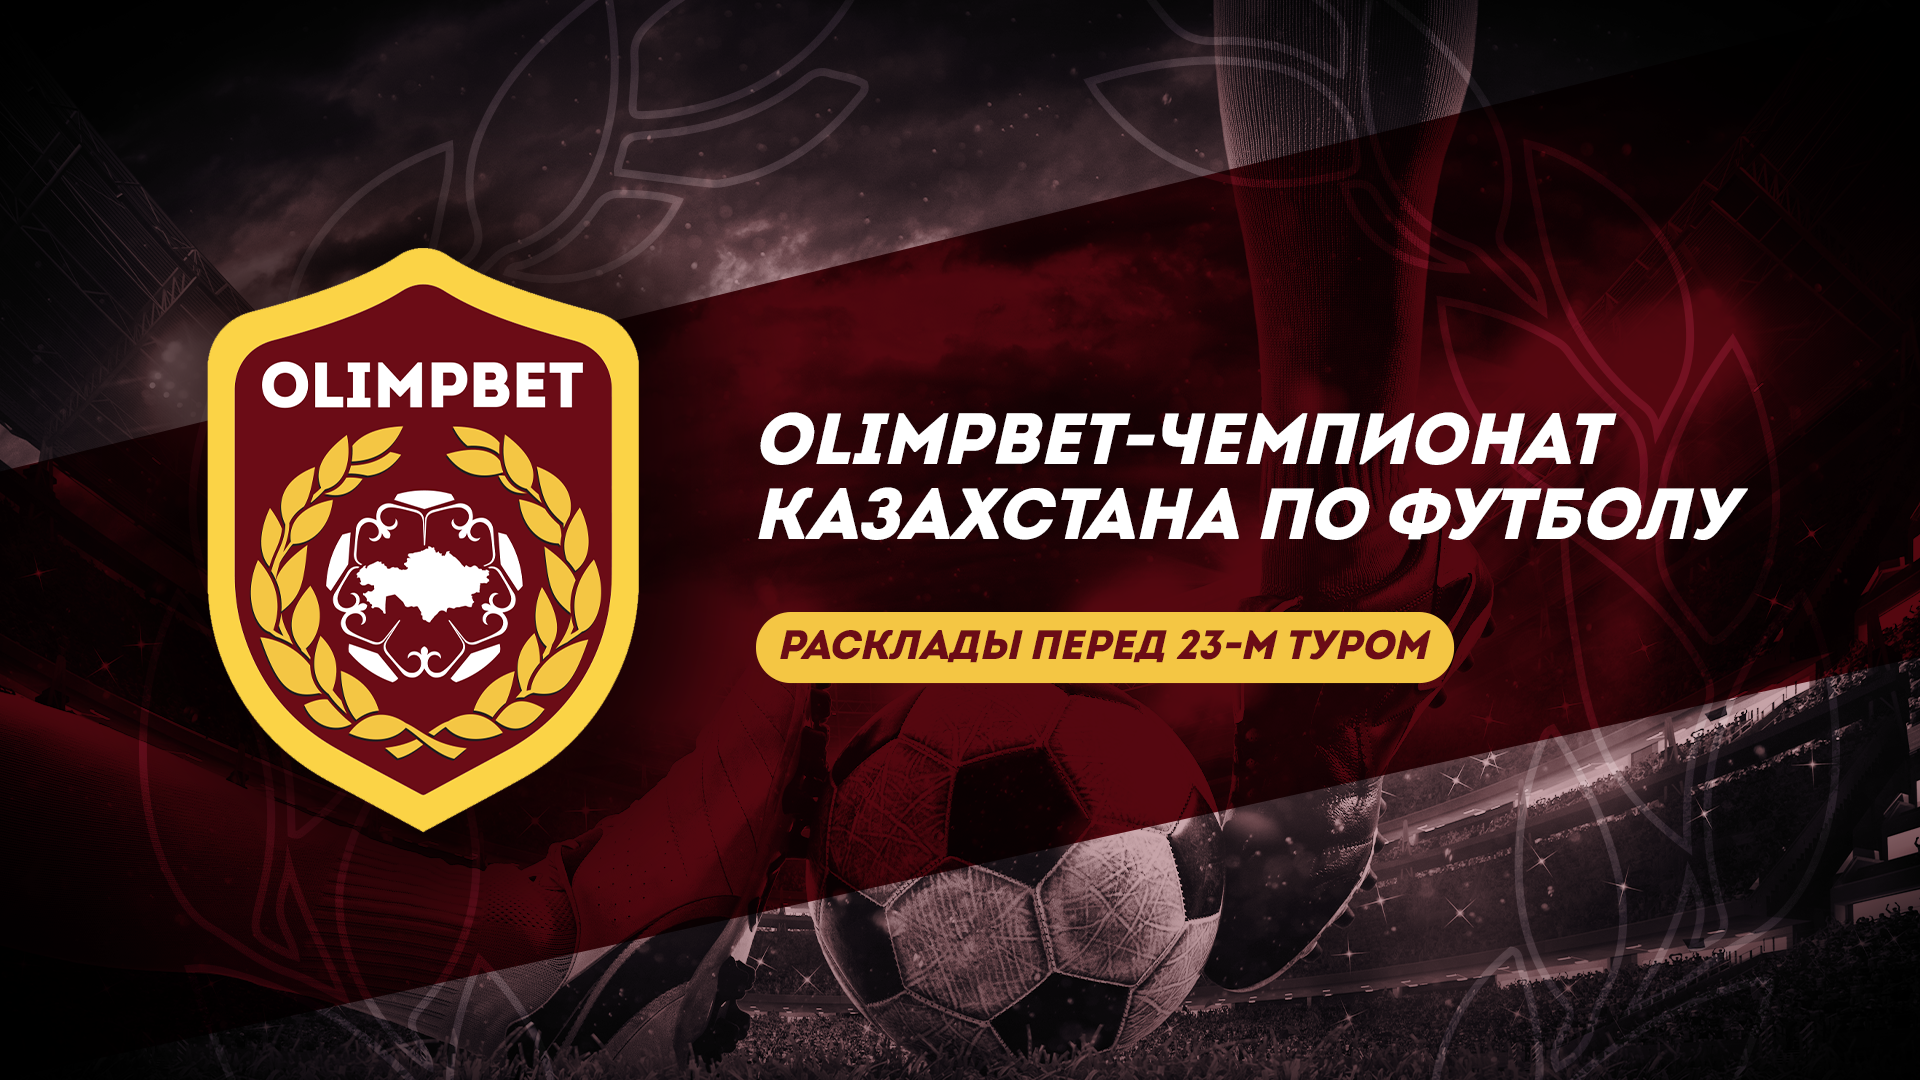 23-й тур OLIMPBET-Чемпионата Казахстана по футболу: «Эль-класико» и битва лидеров